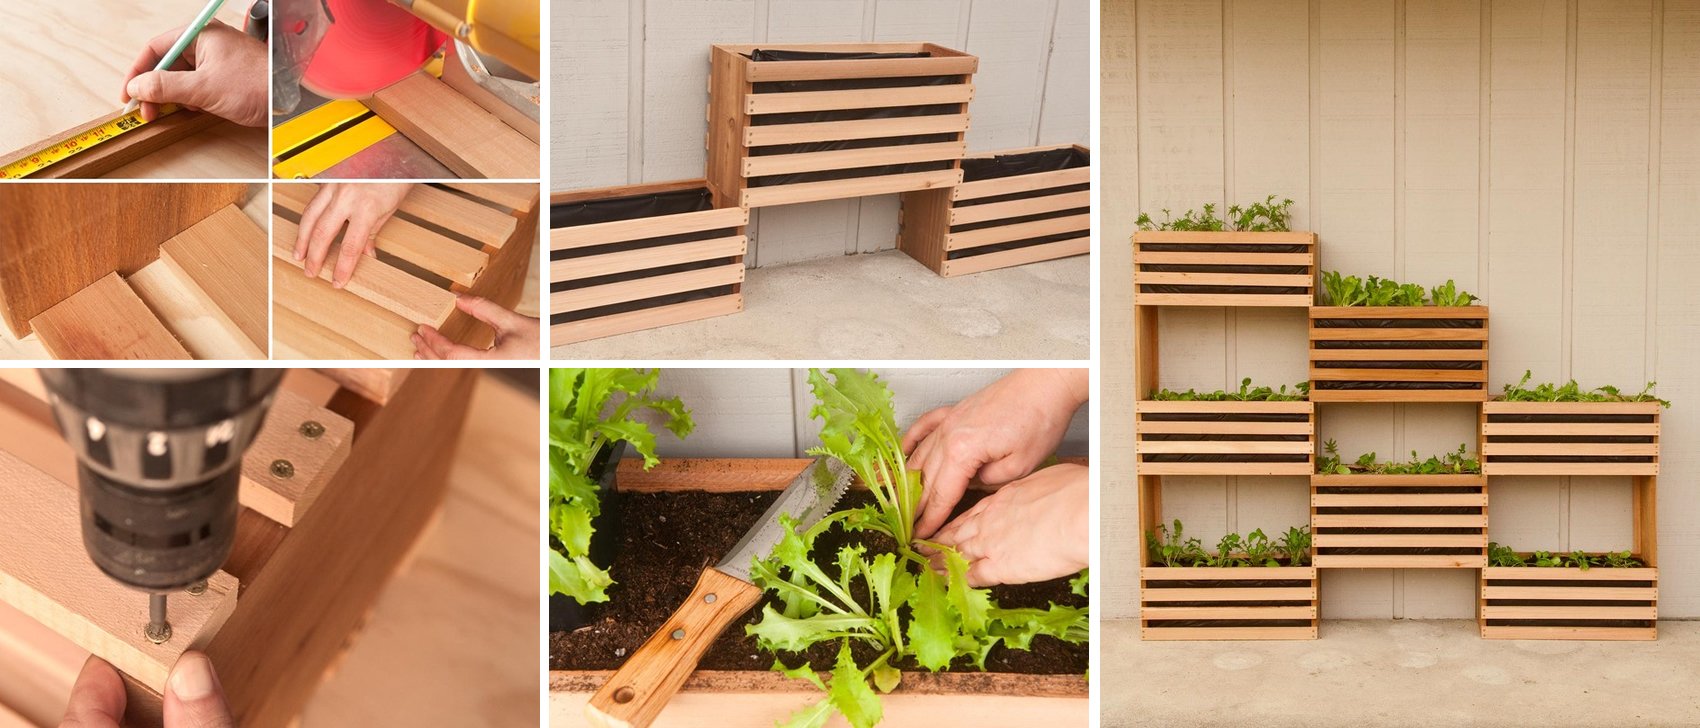 DIY Vertical Vegetable Garden tutorial